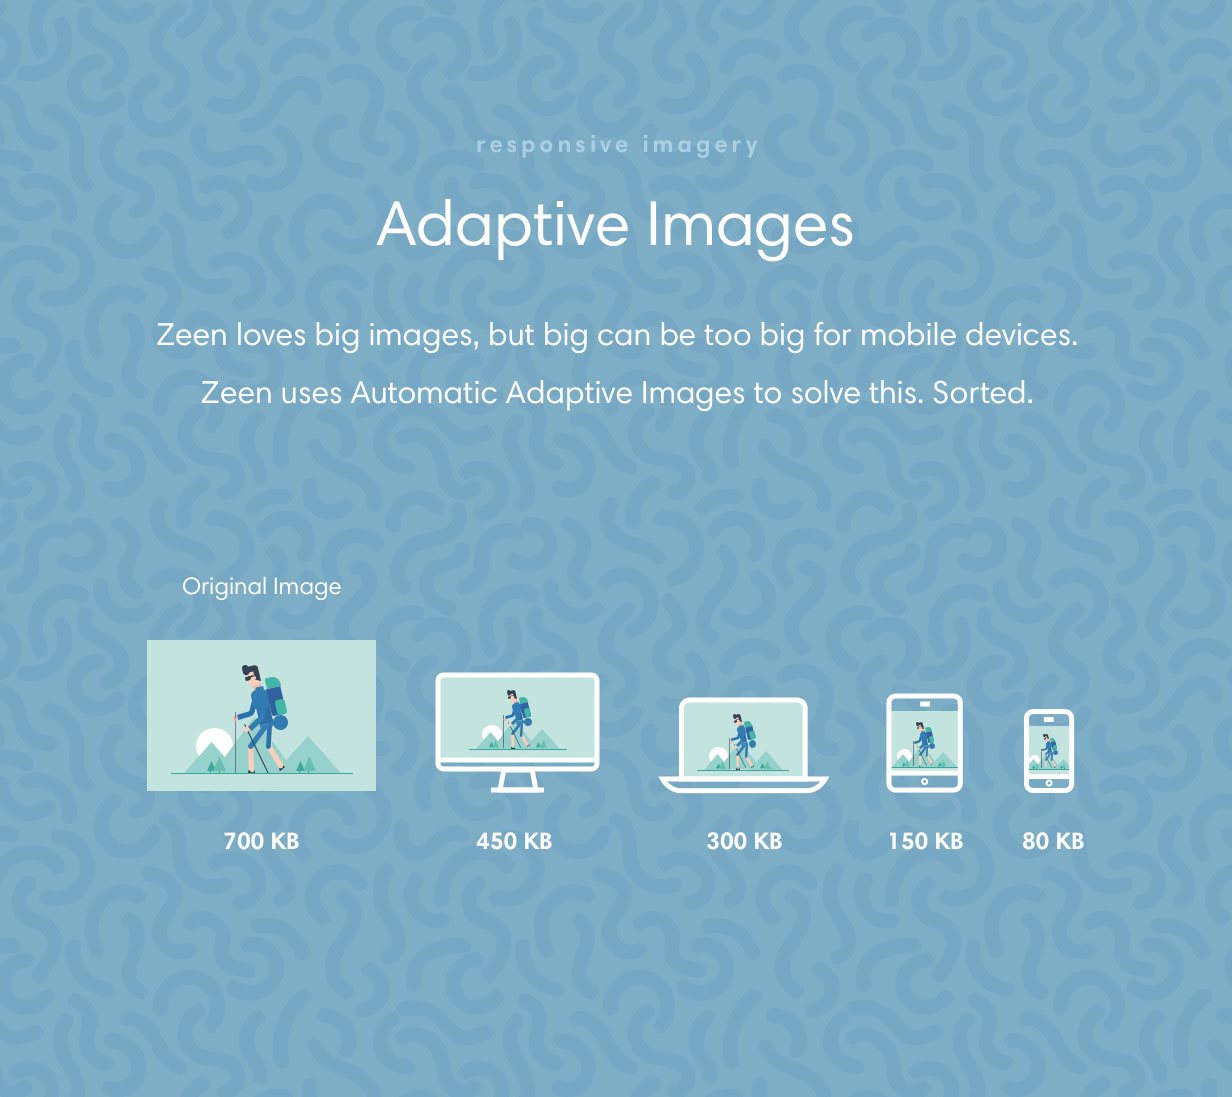 Zeen uses adaptive images